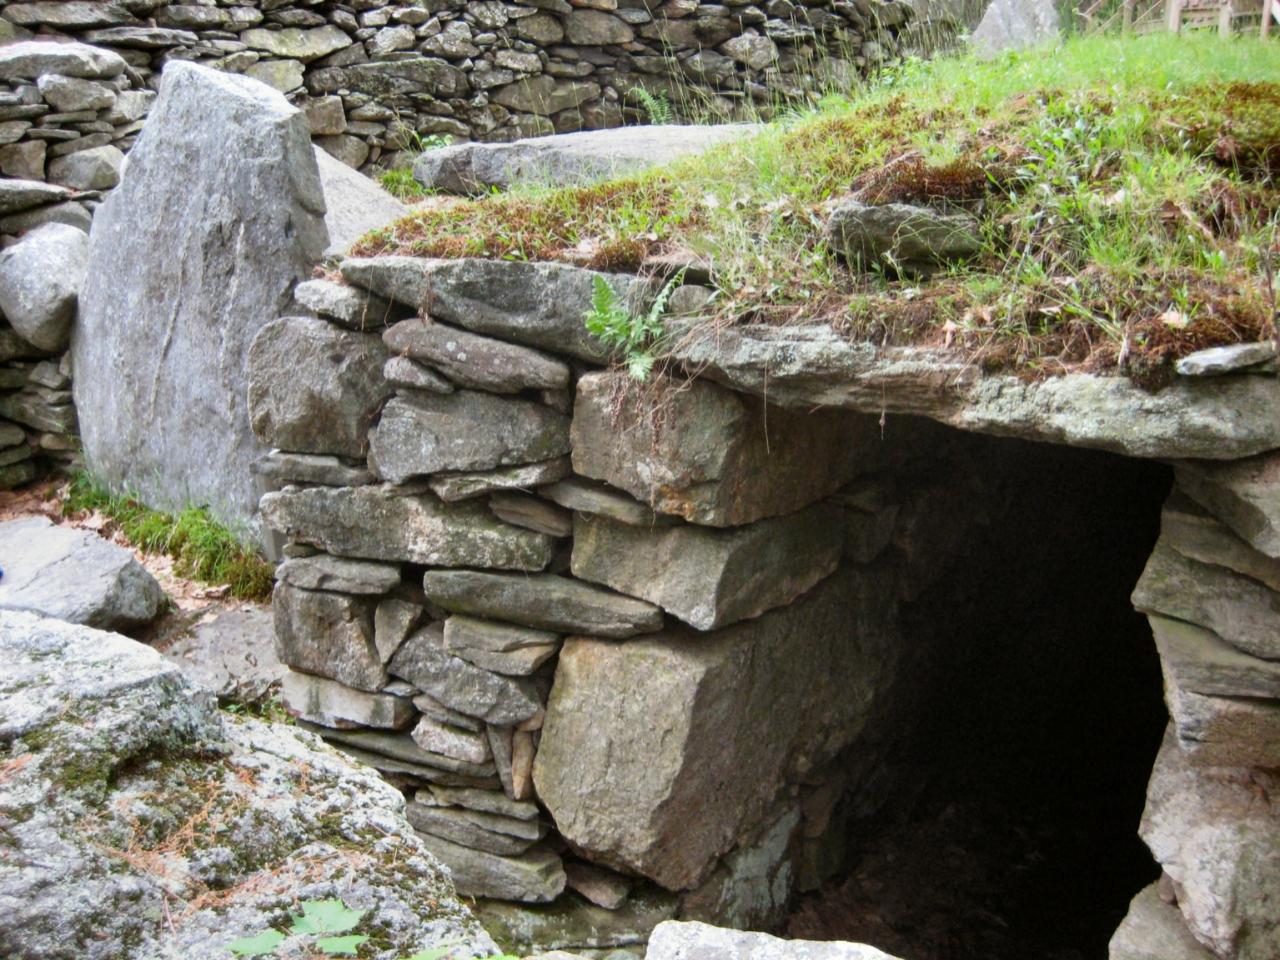 Amerika'nın Stonehenge'i 4,000 yaşında olabilir - Keltler mi inşa etti? 1